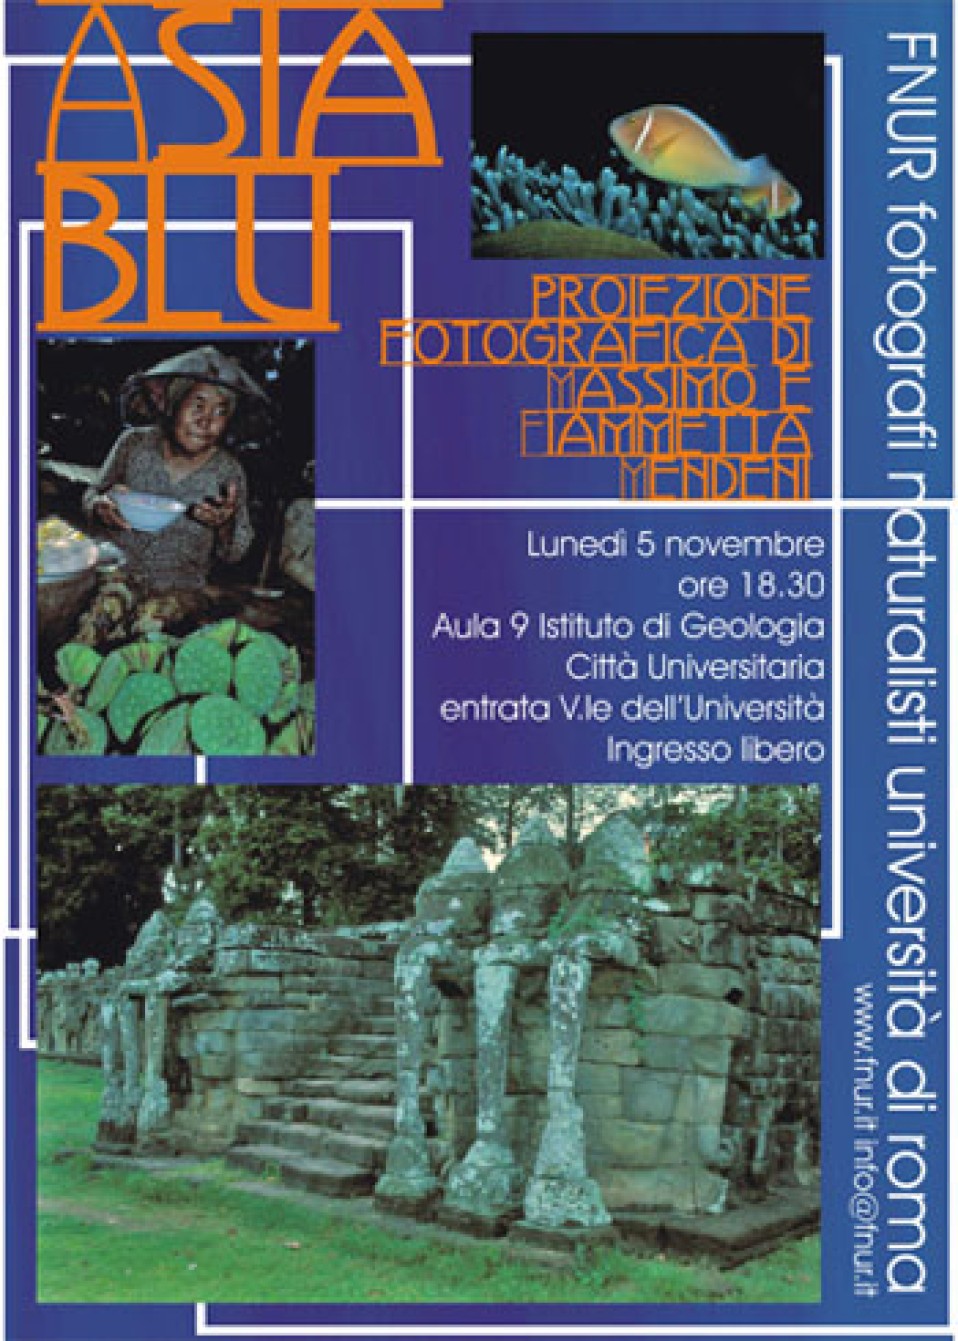 5 novembre 2007 – Asia blu